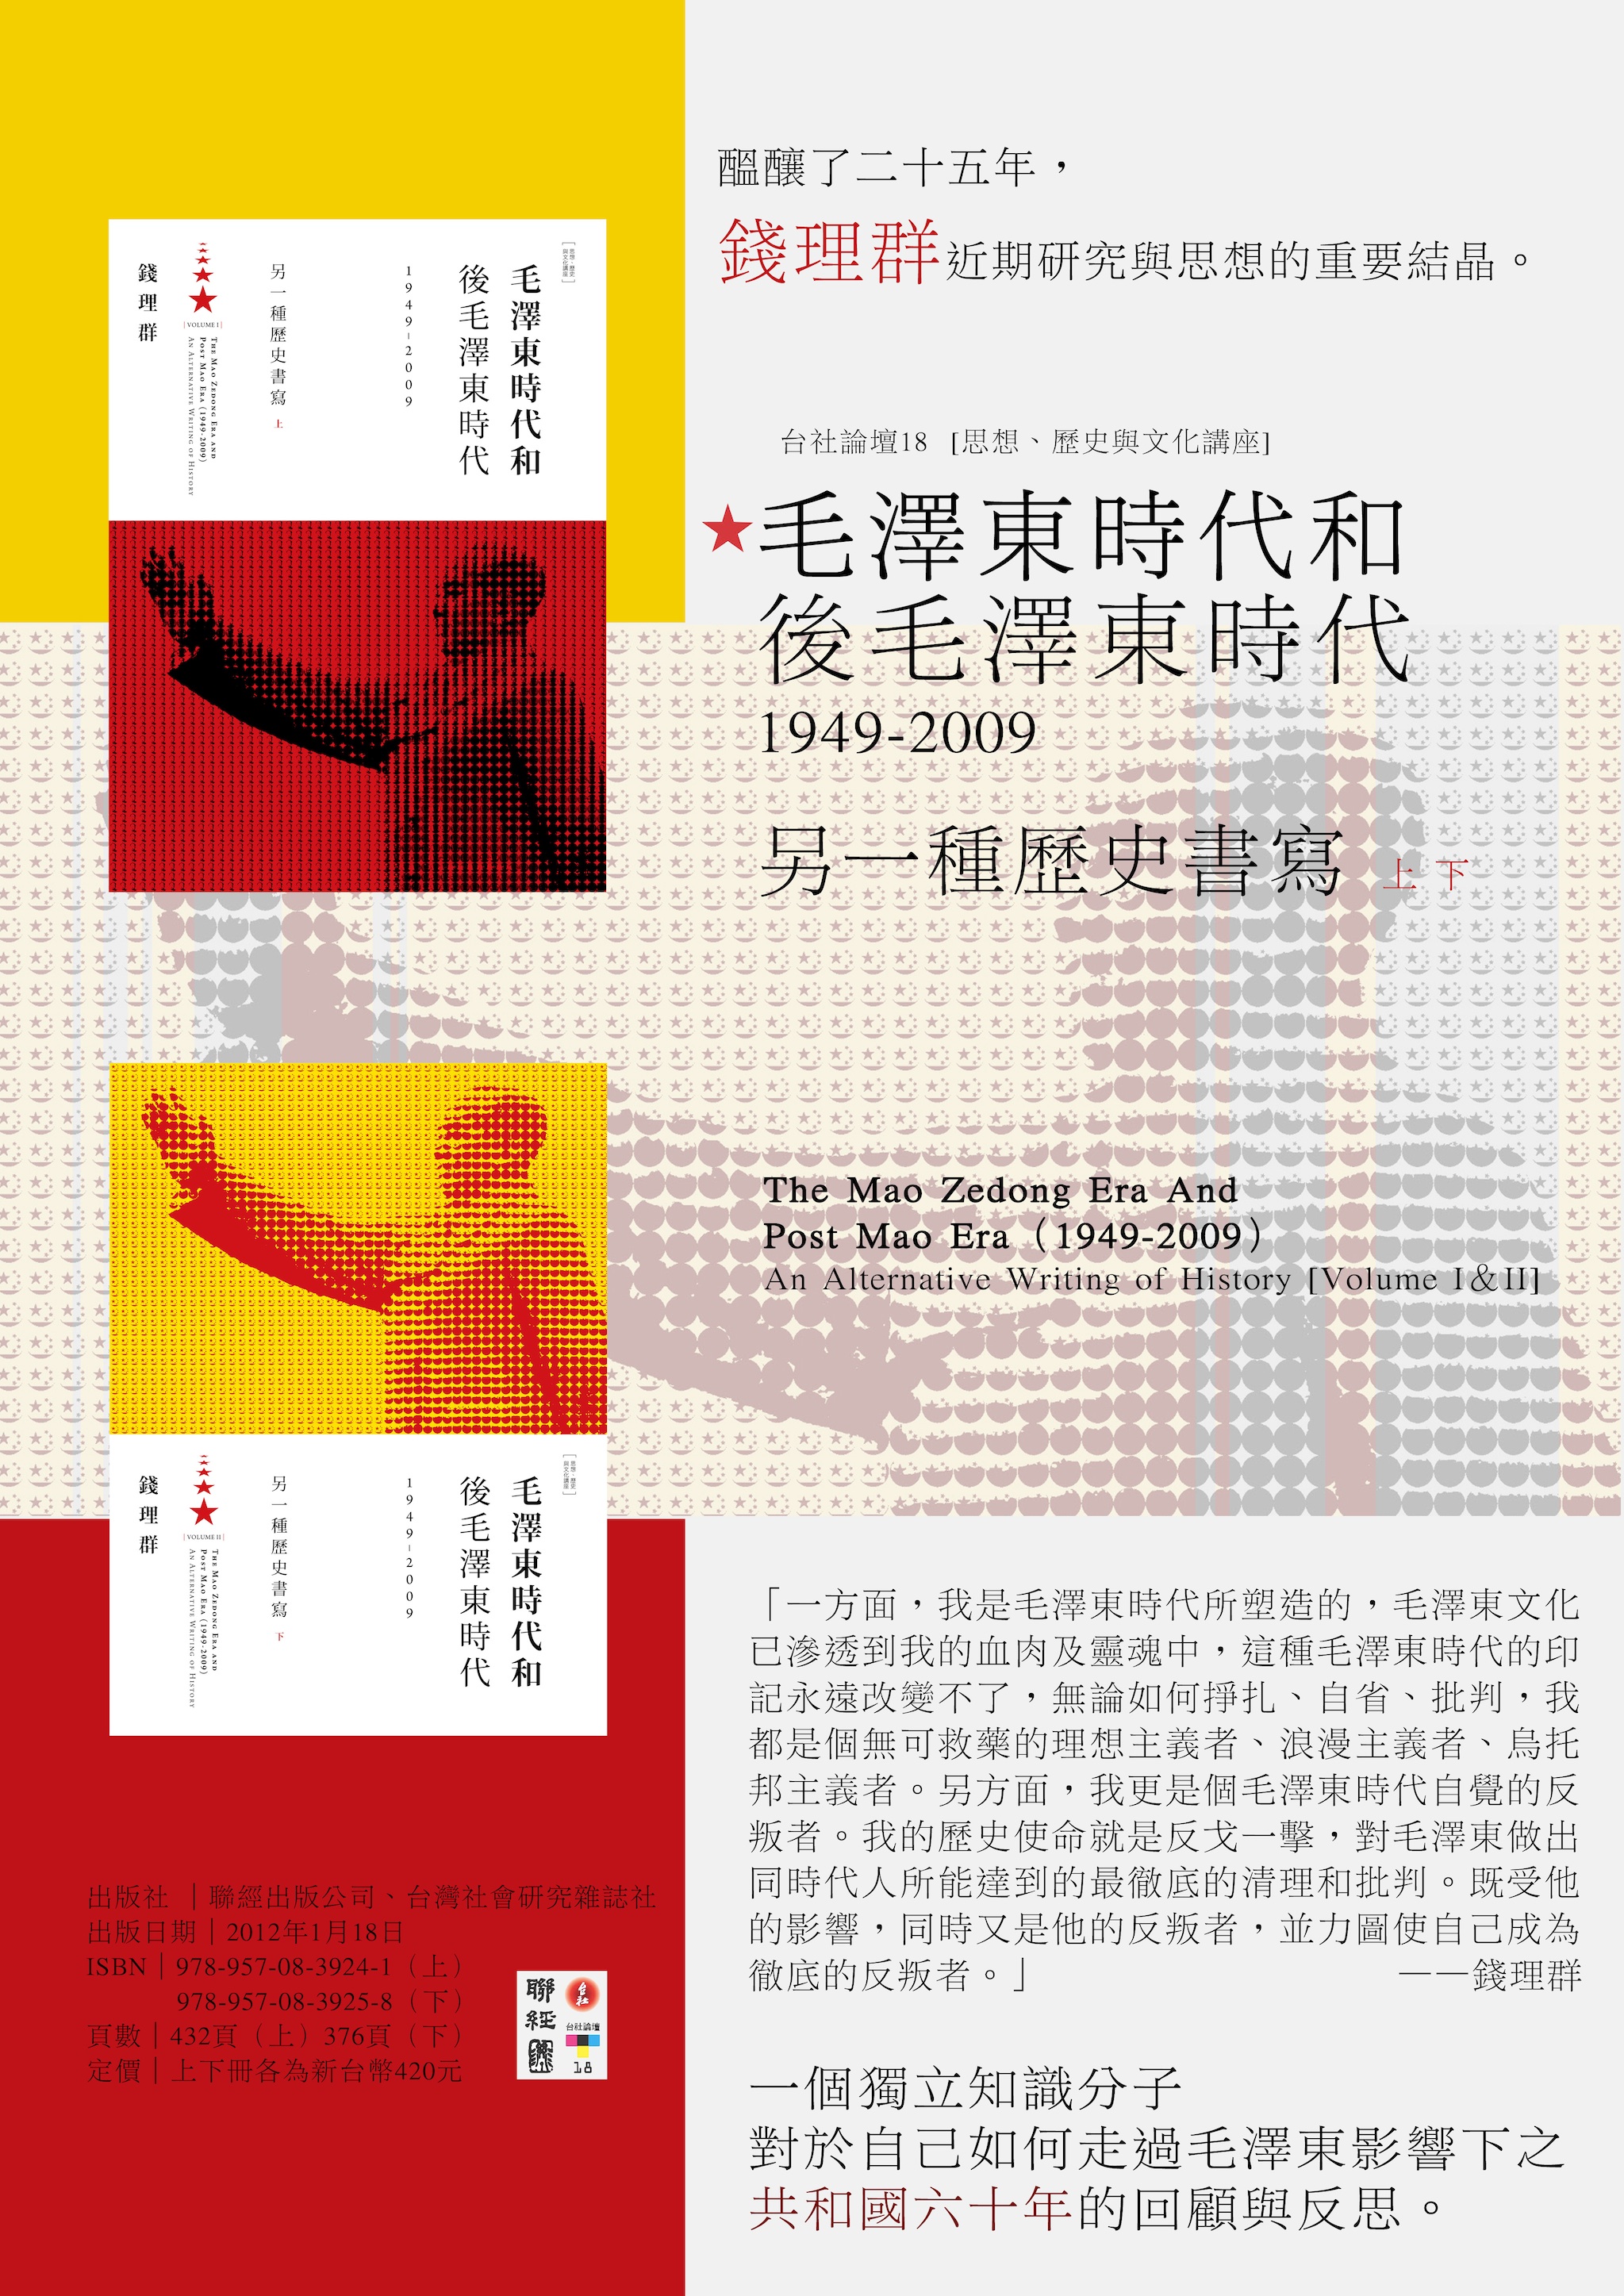 錢理群《毛澤東時代與後毛澤東時代（1949-2009）：另一種歷史書寫 